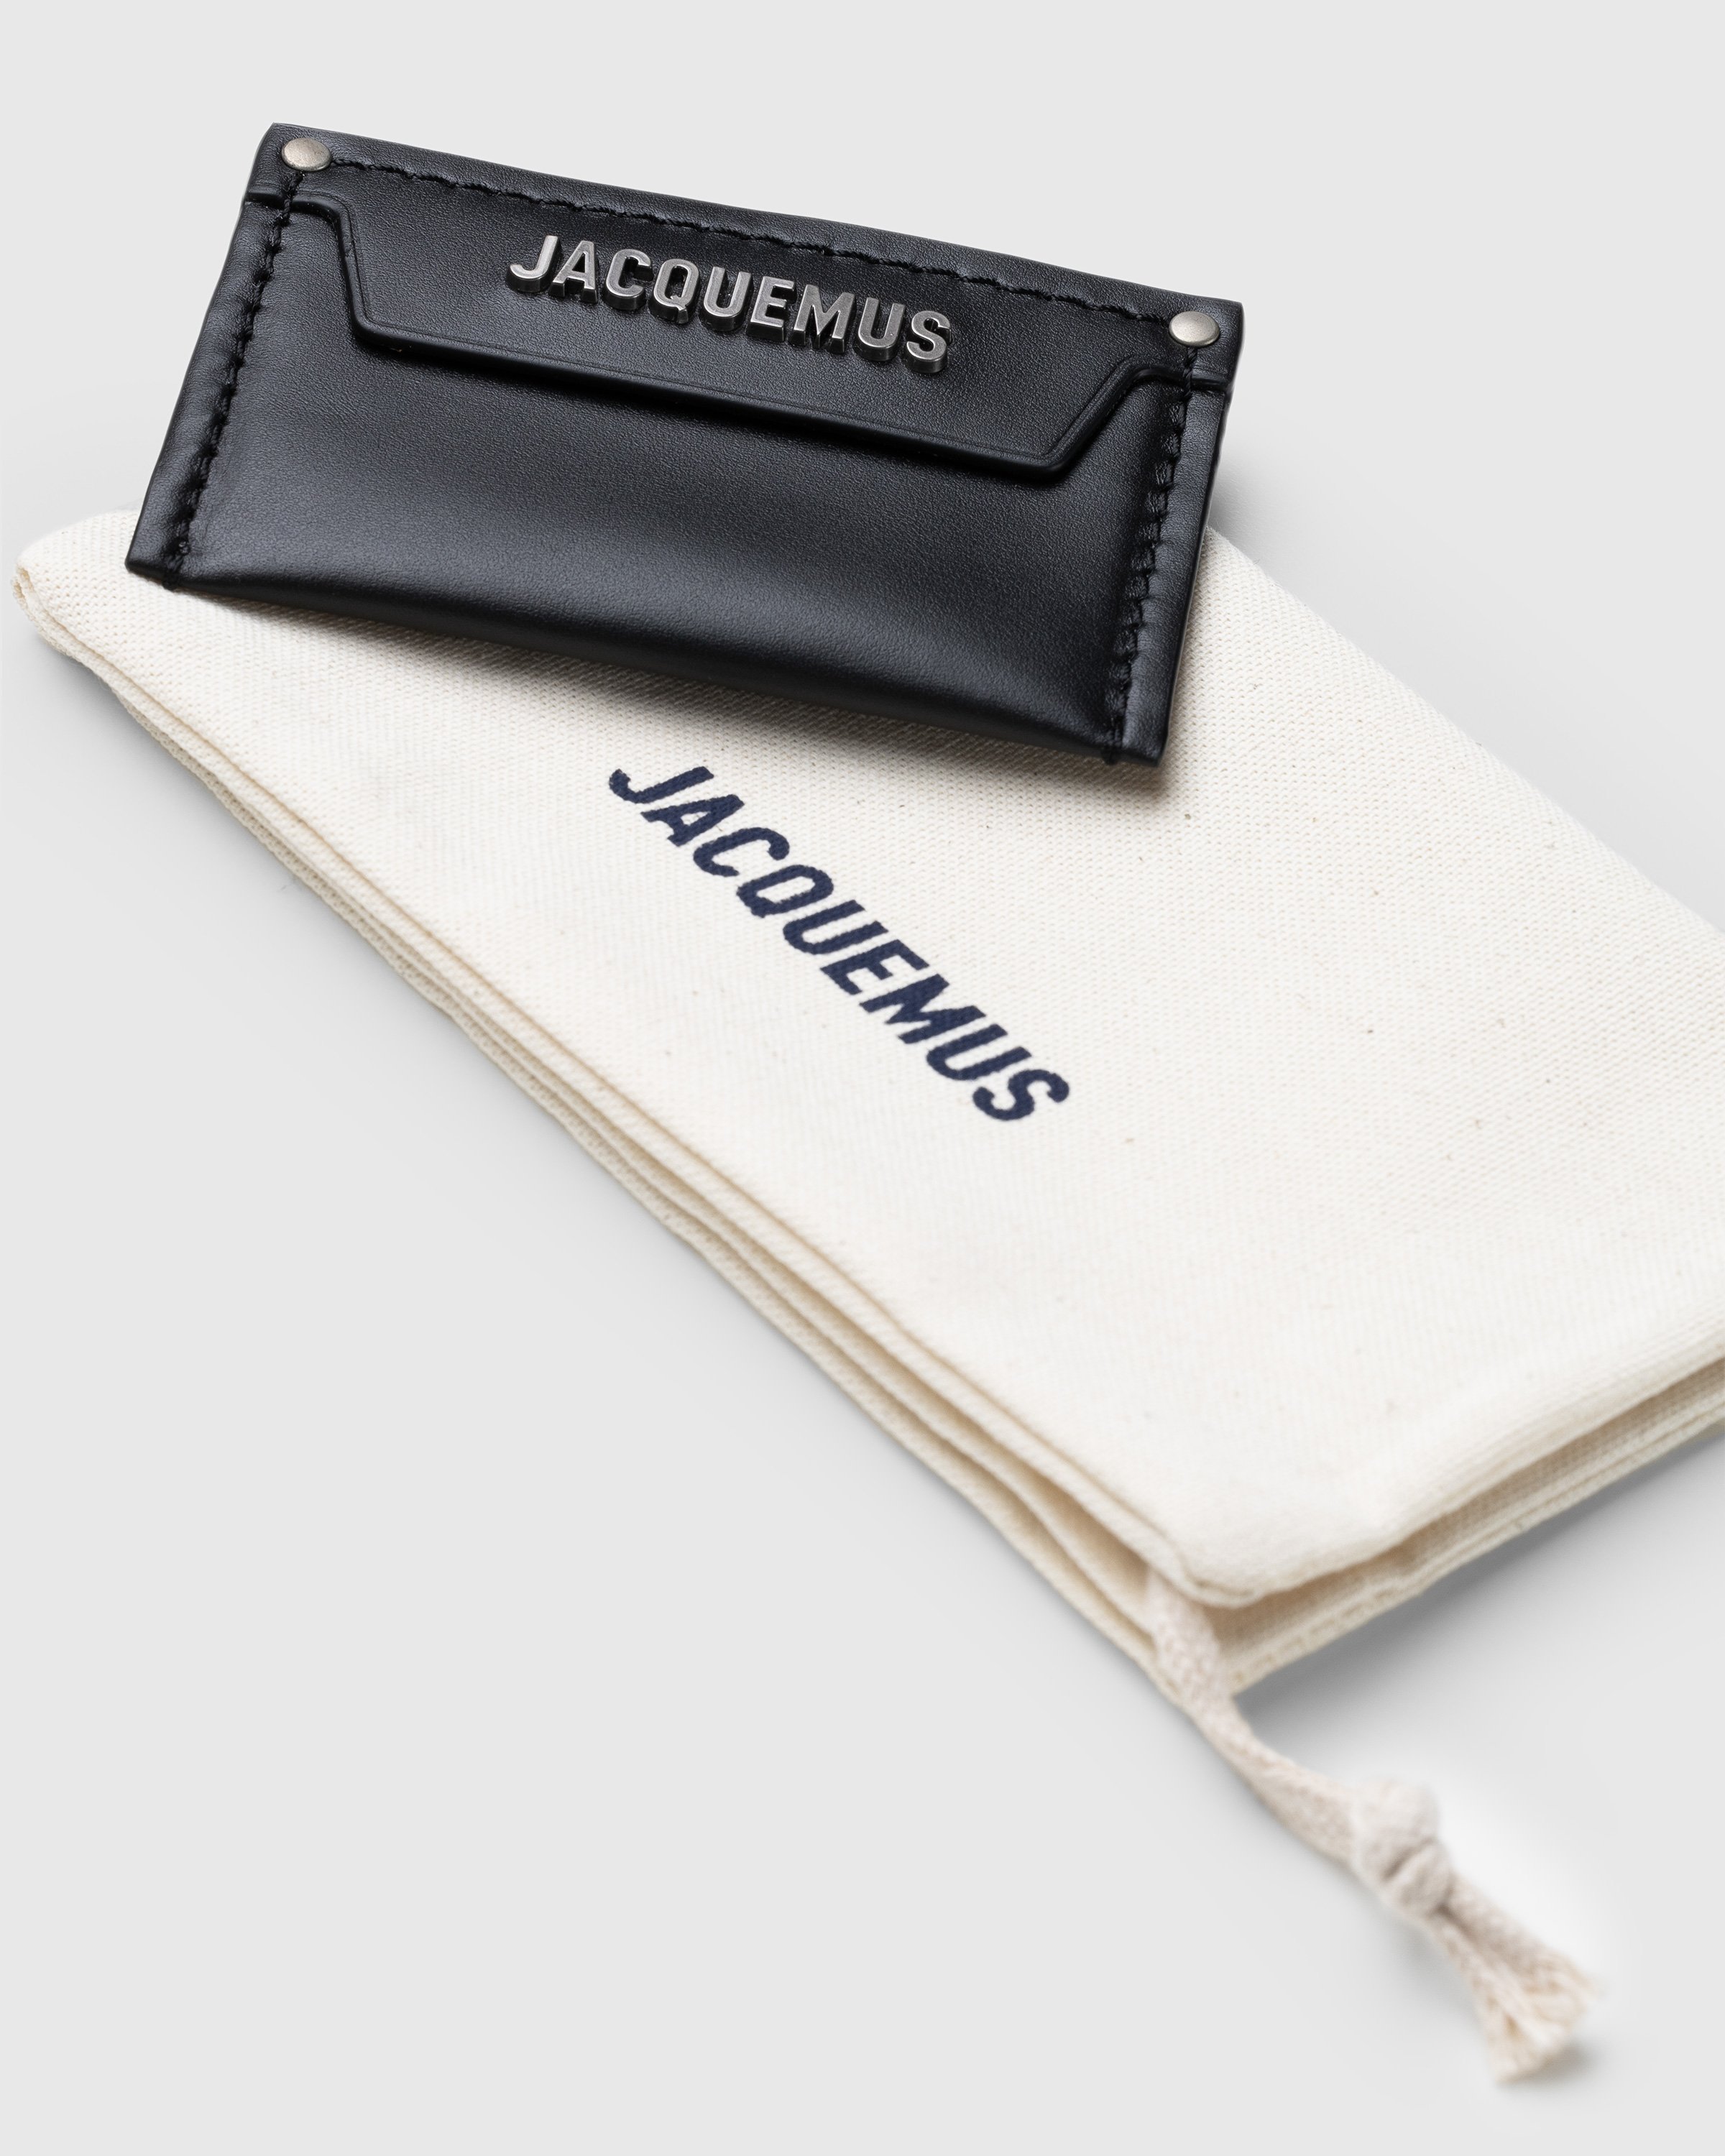 JACQUEMUS - Le Porte Carte Meunier Black - Accessories - BLACK - Image 3